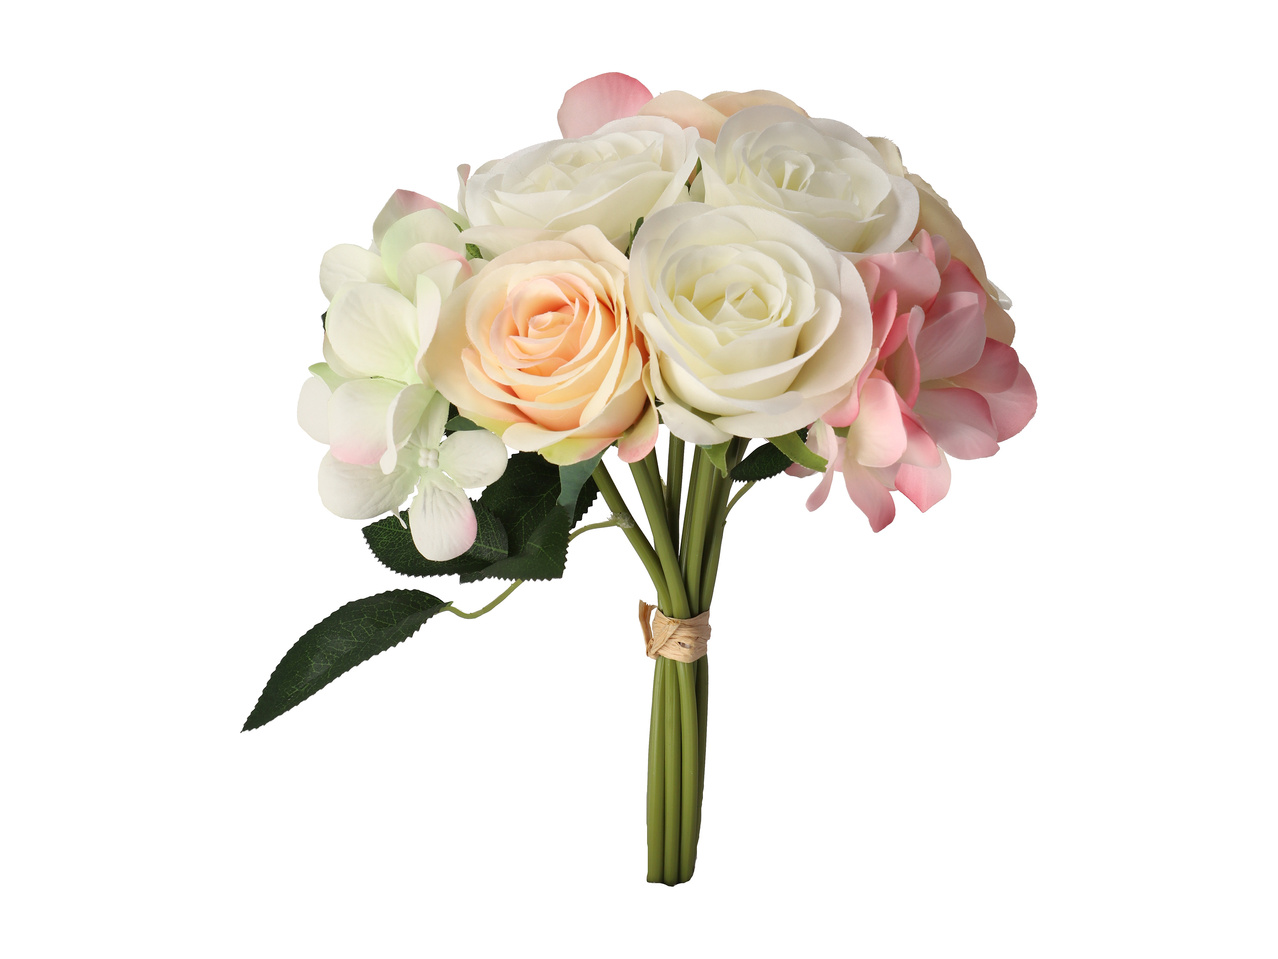 Bukiet 9 sztucznych kwiatów , cena 27,99 PLN 
Bukiet 9 sztucznych kwiatów 3 wzory ...